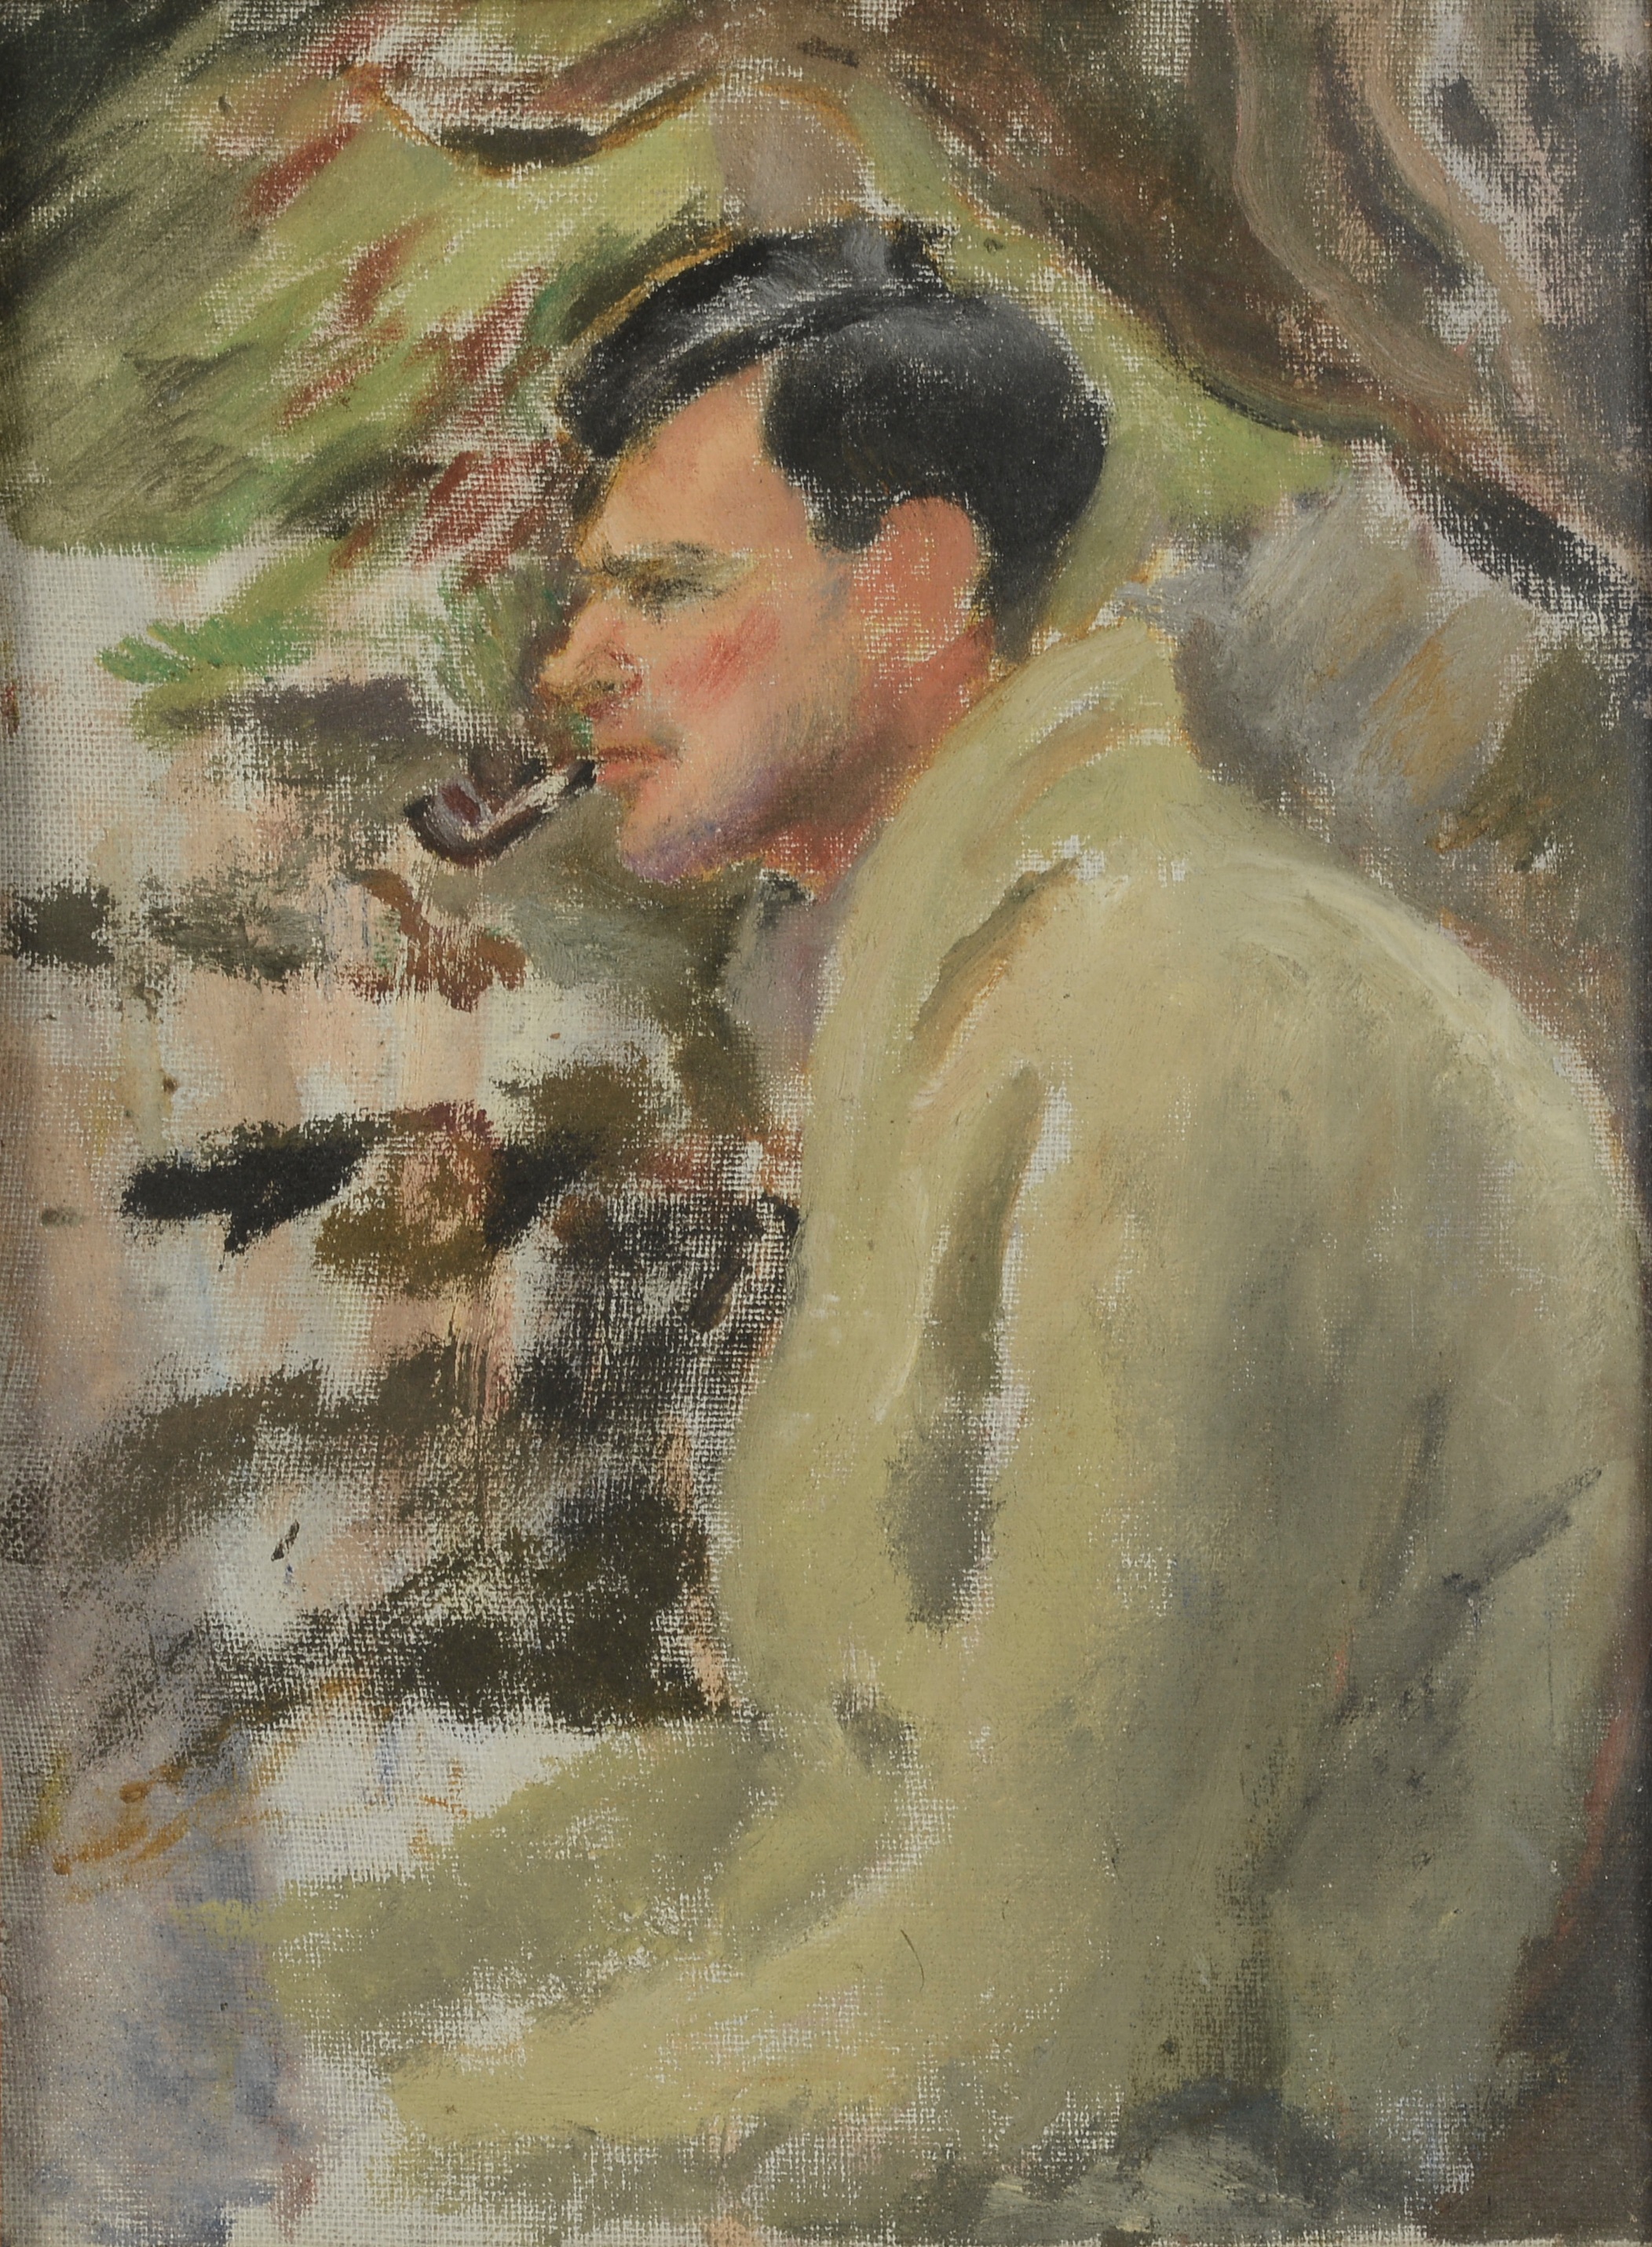 ARR MONICA RAWLINS (1903-1990), 'Fishing', half portrait of a dark haired man,